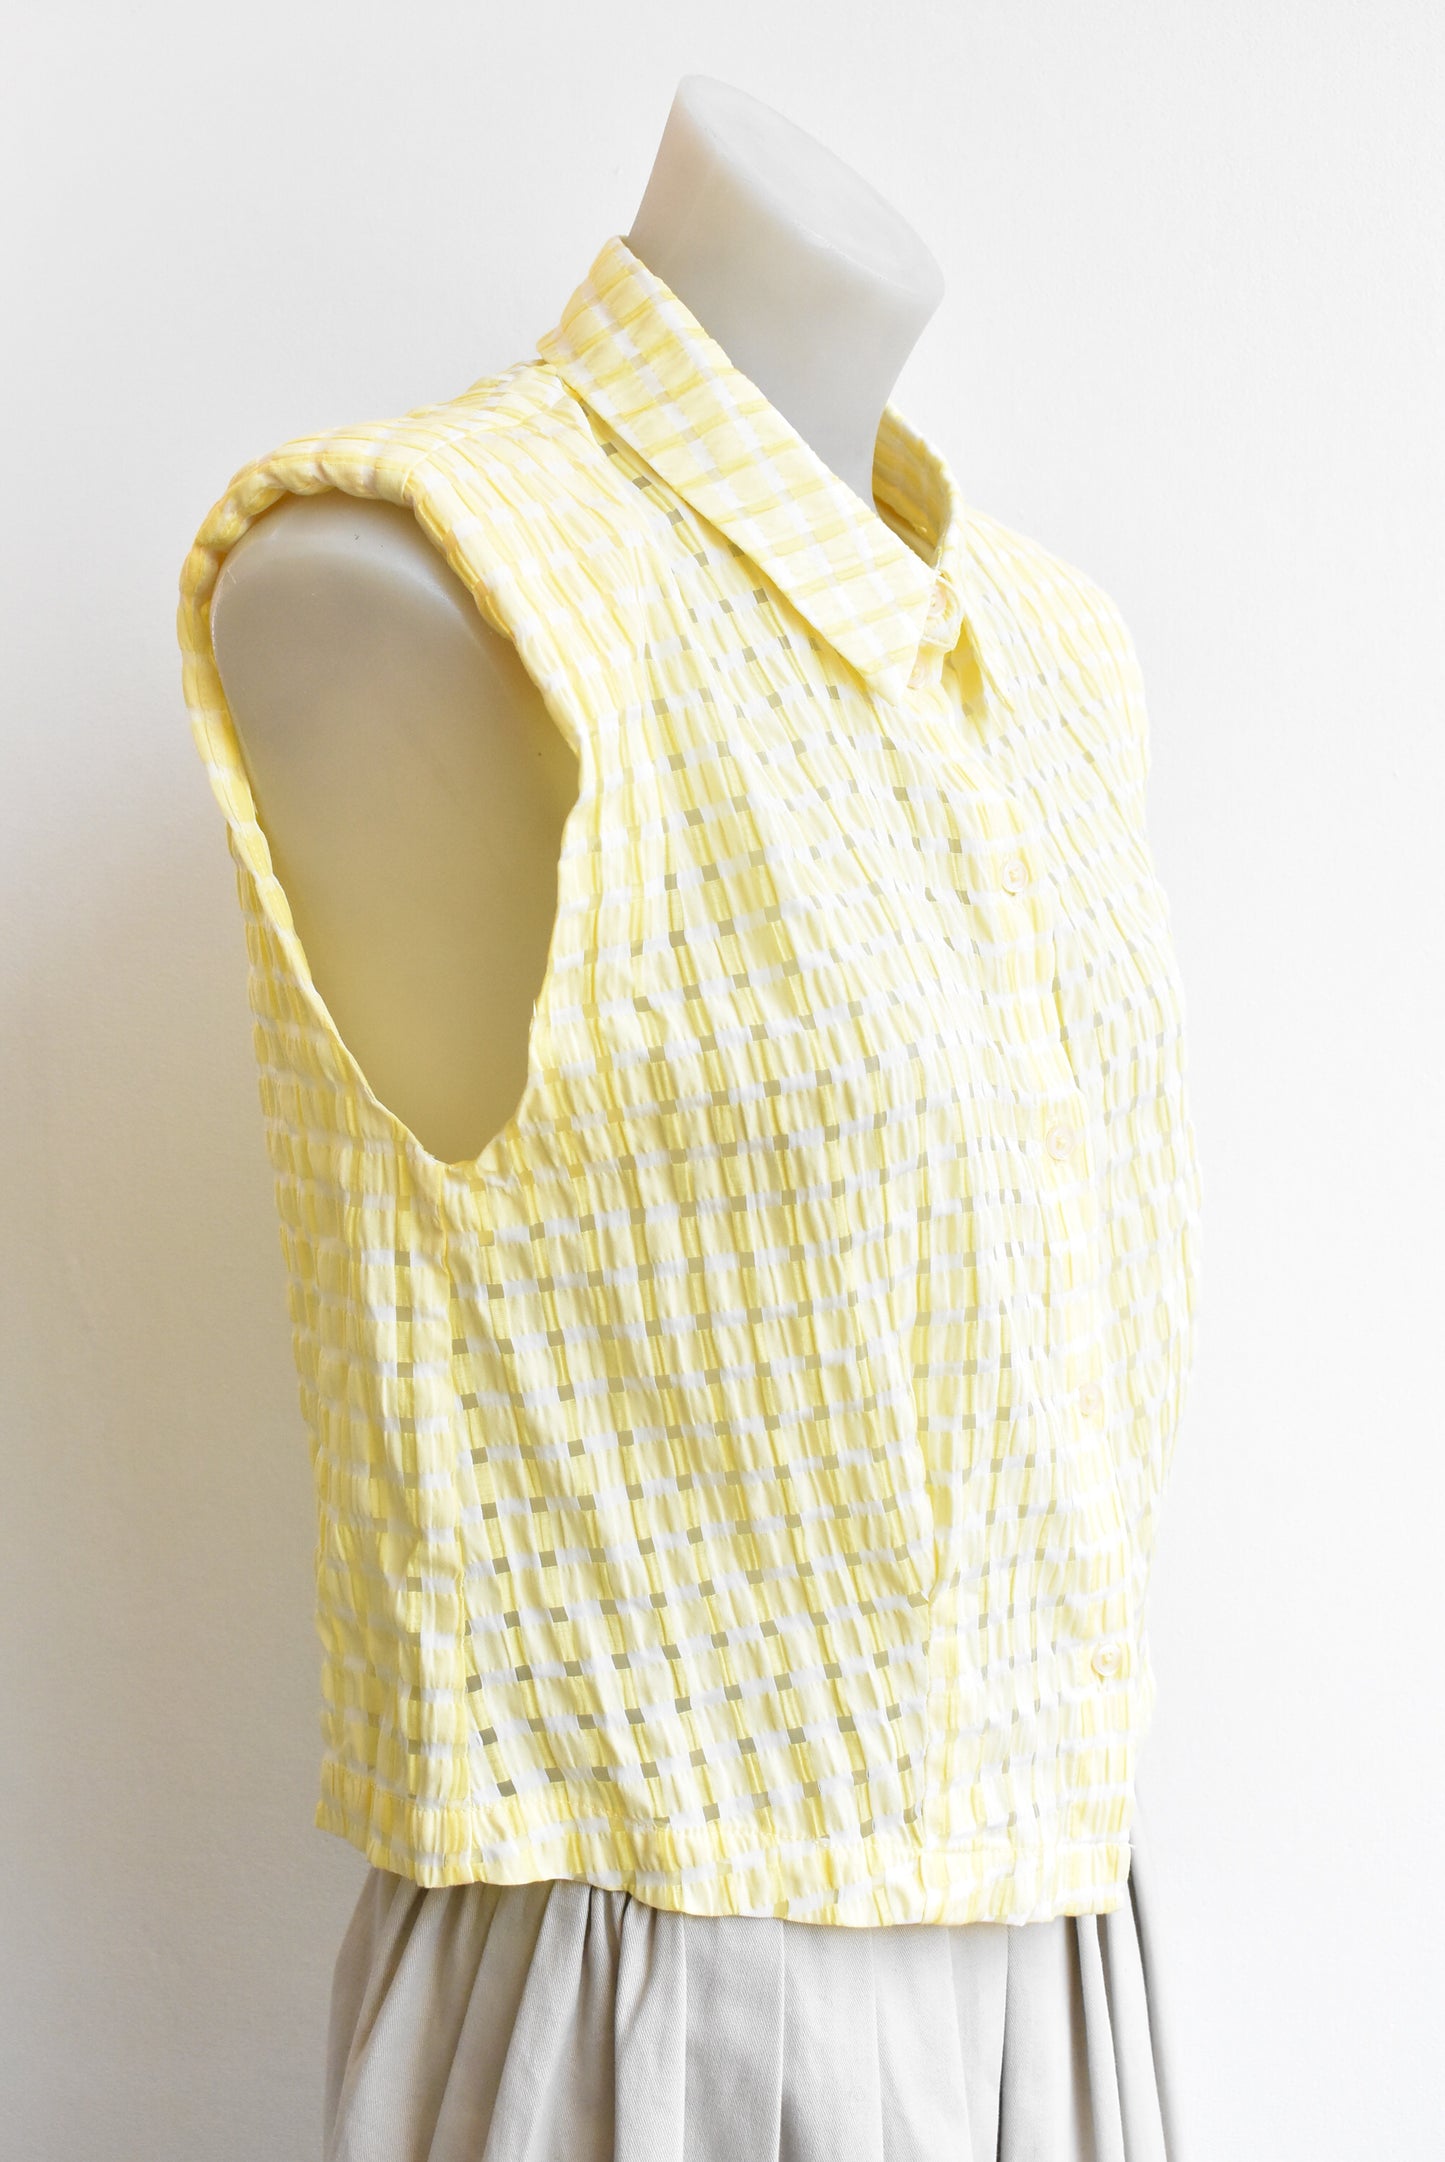 Vero Moda yellow checkered sleeveless shirt, size M